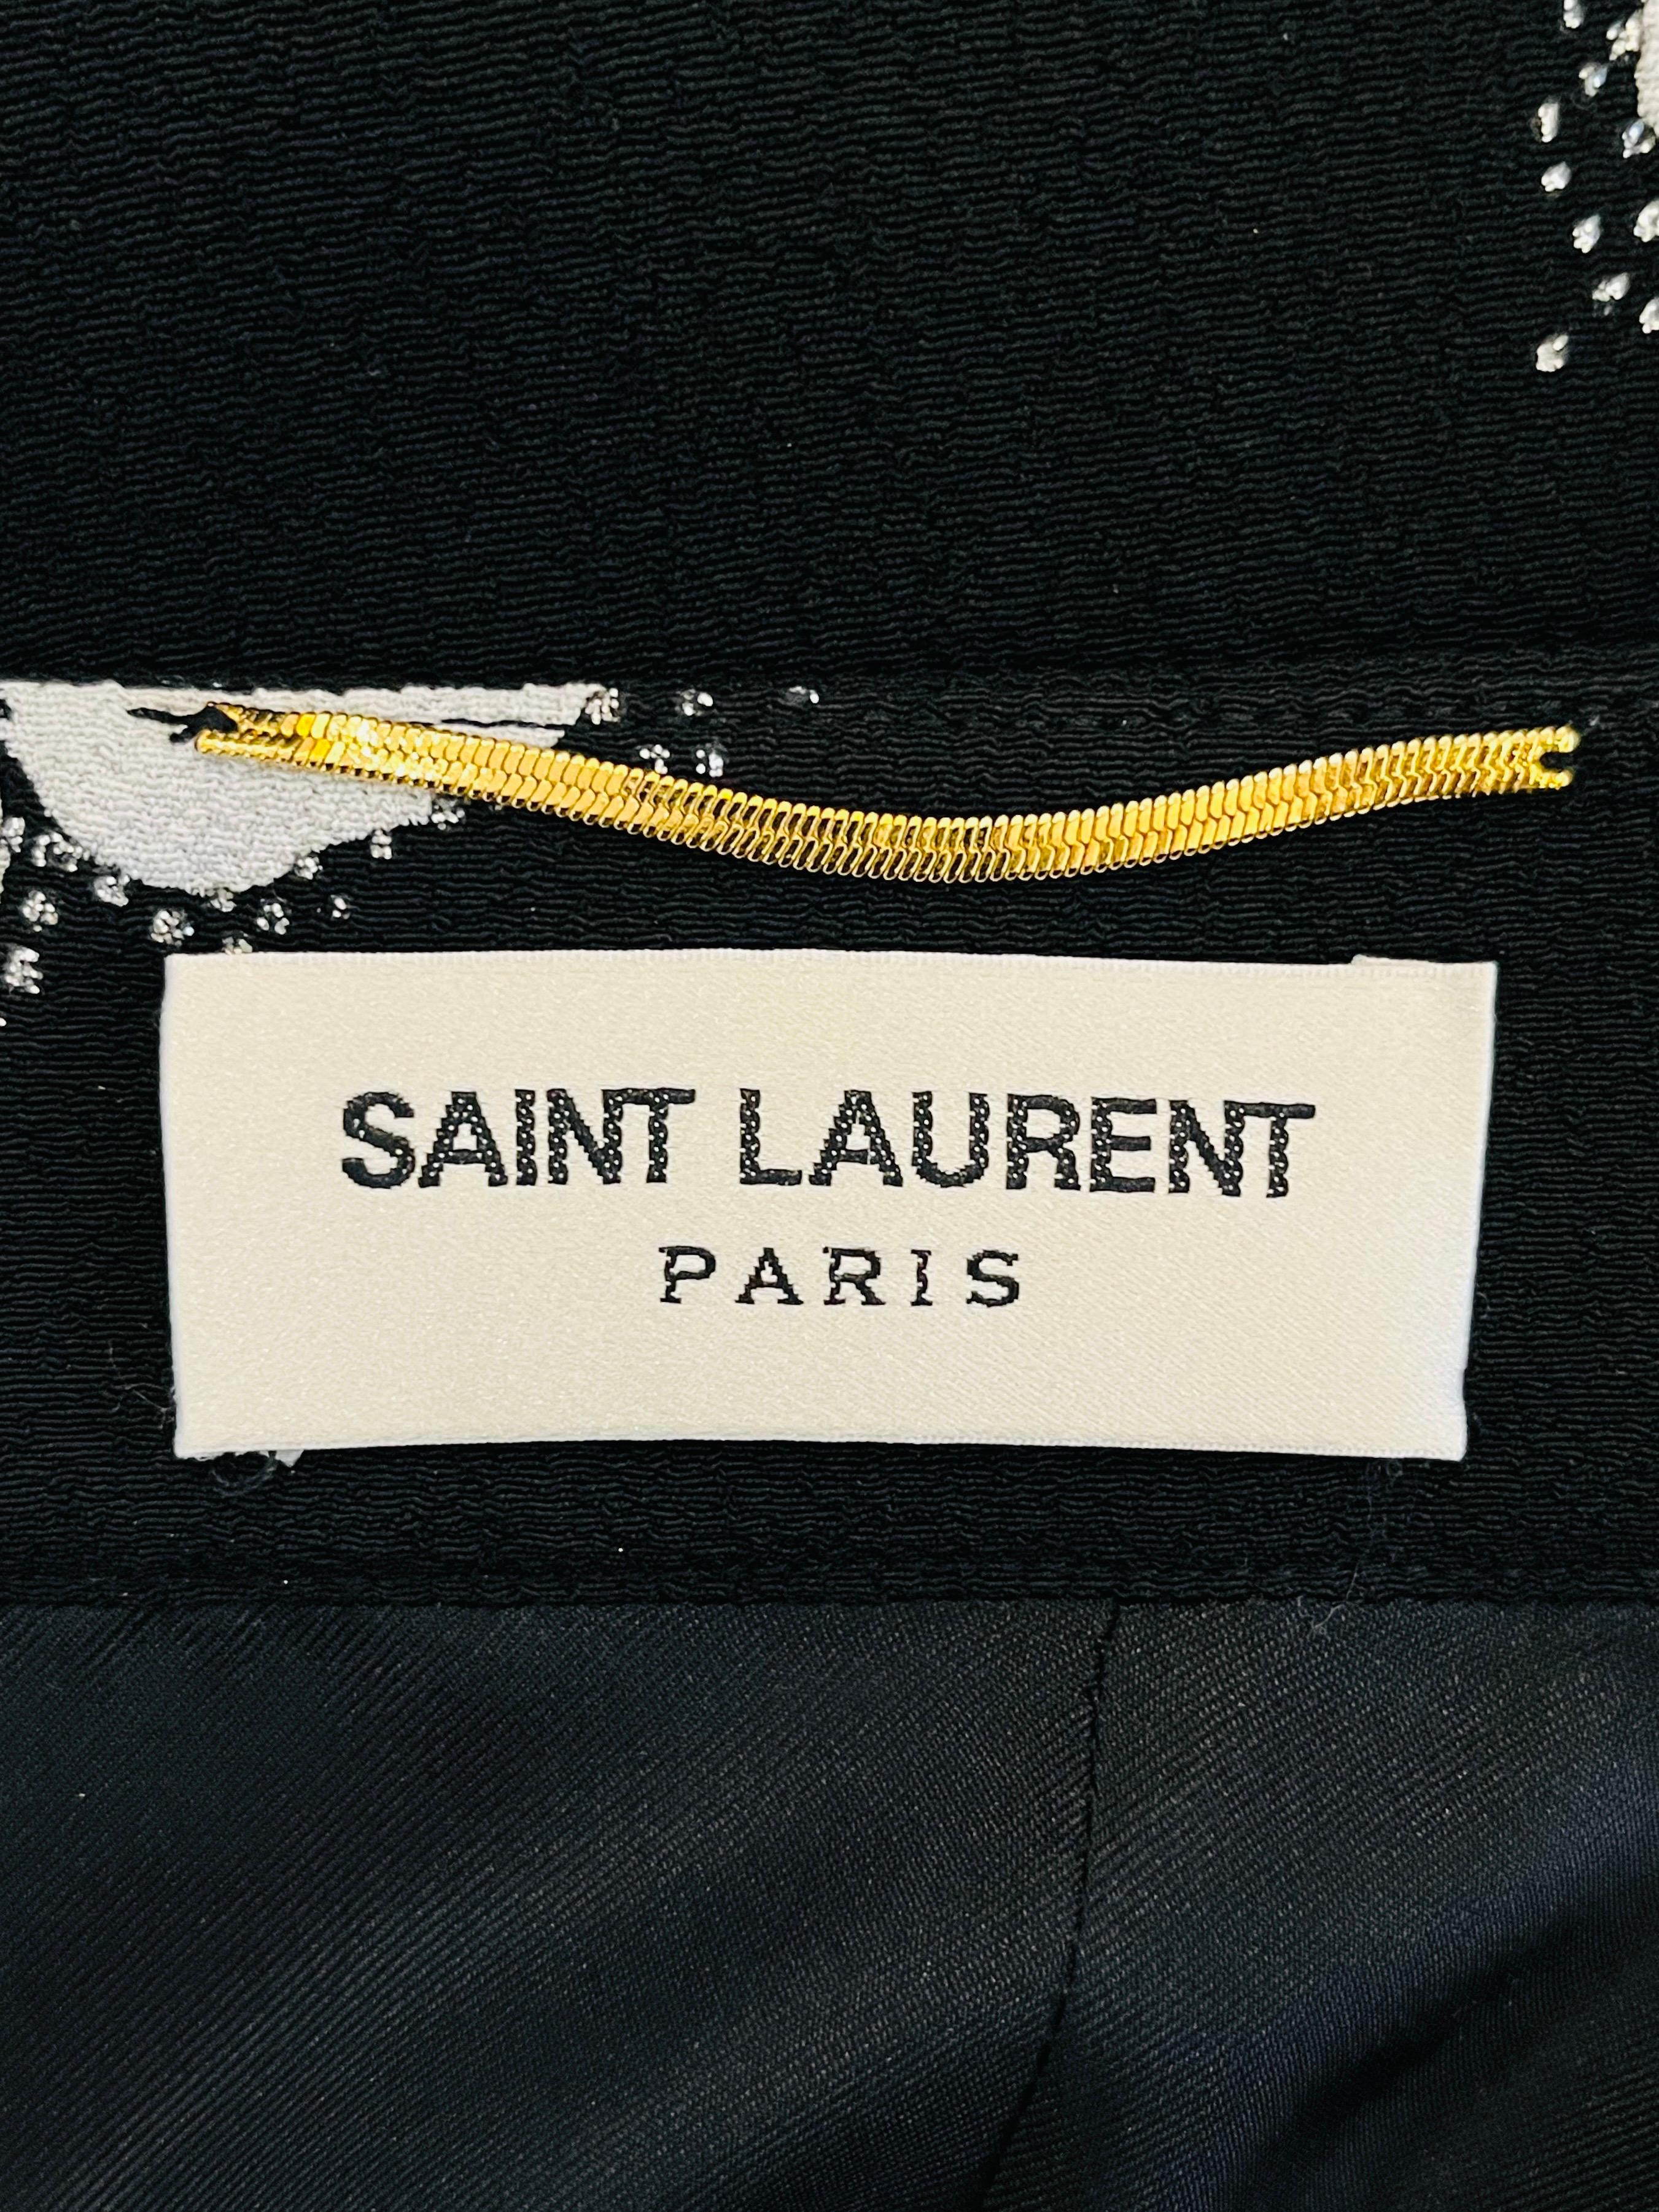 Saint Laurent Floral Print Skirt For Sale 1